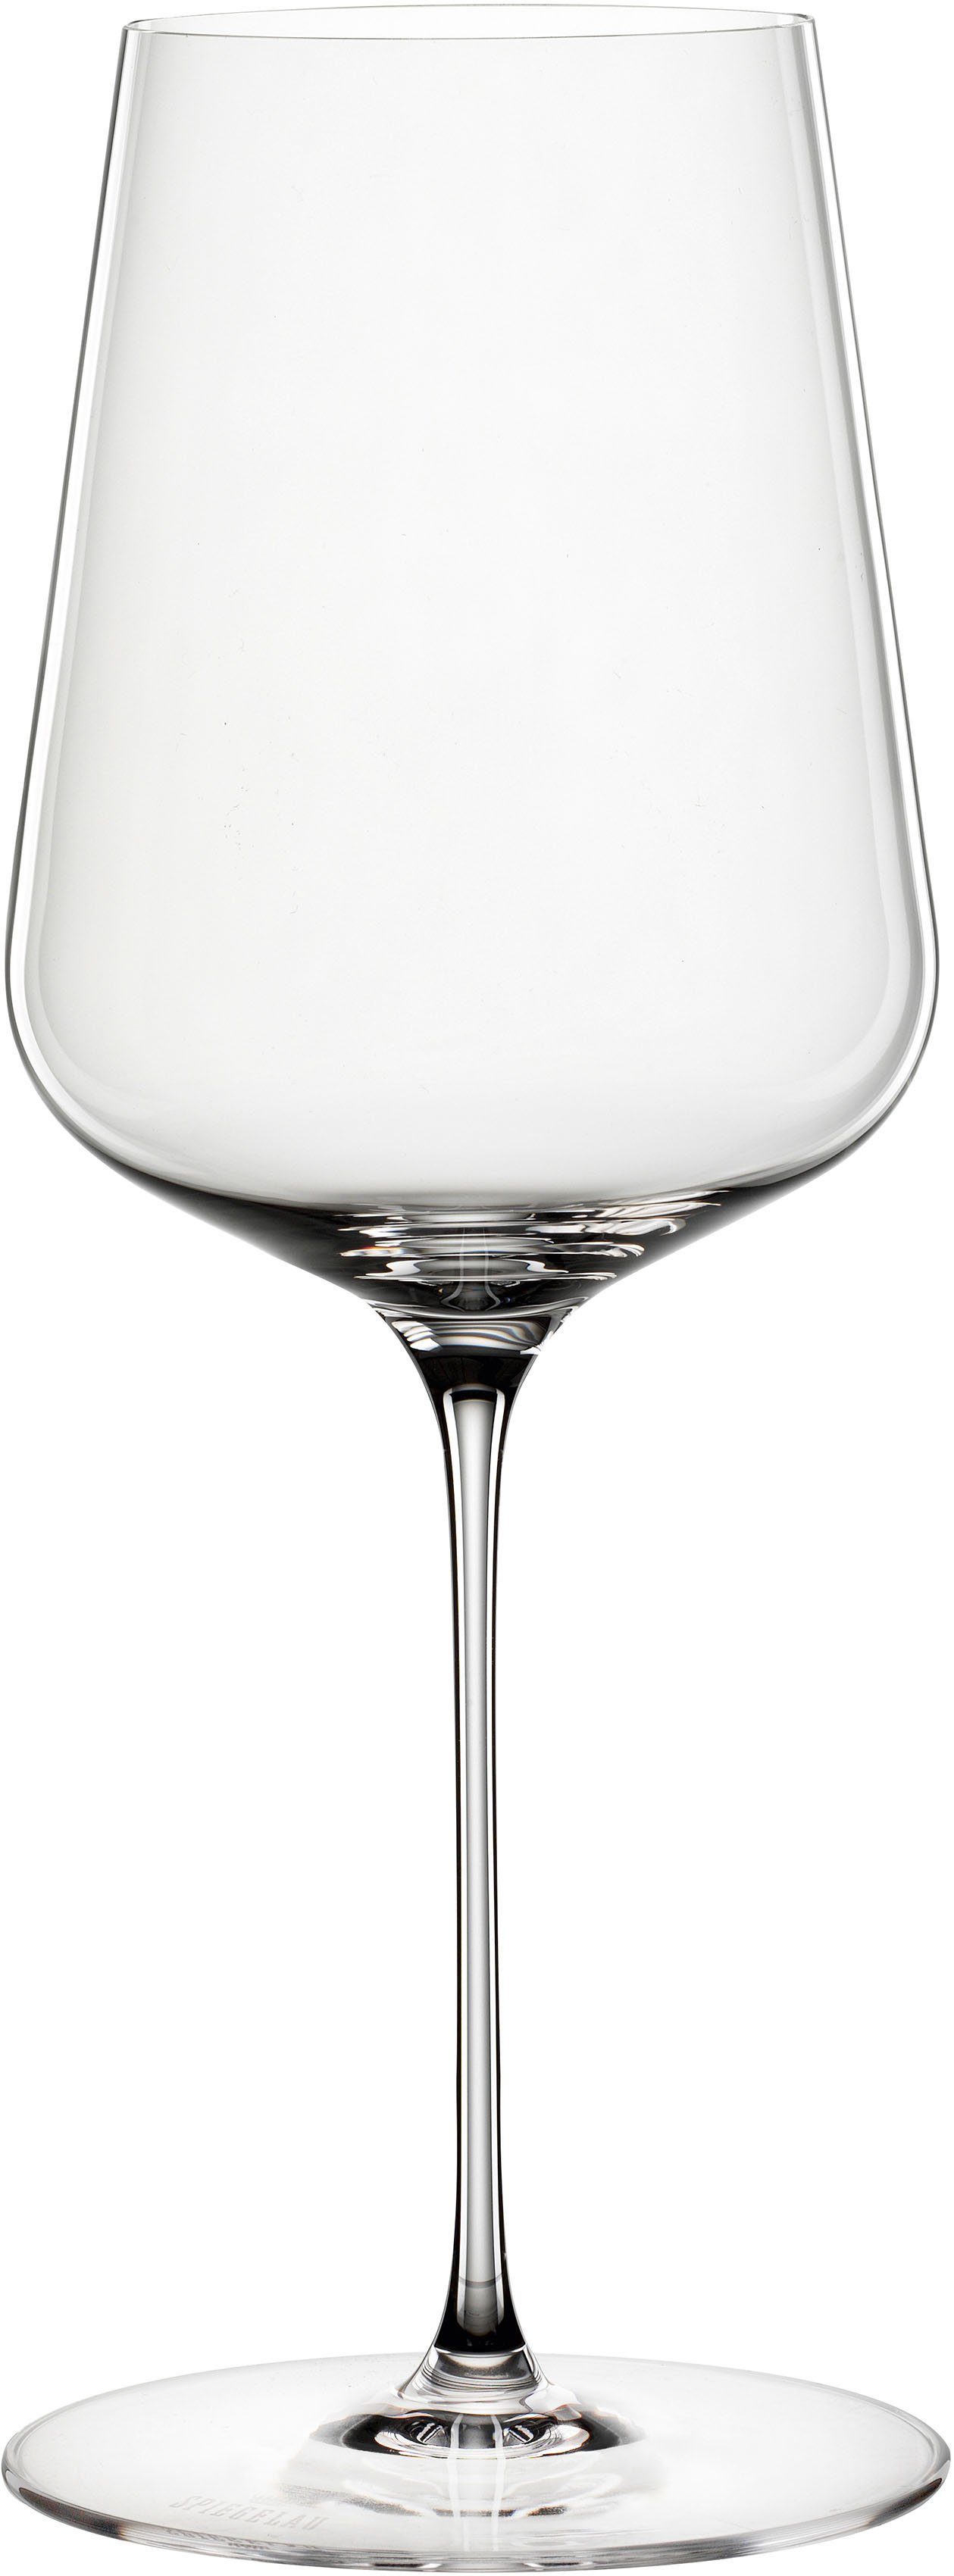 SPIEGELAU Weinglas Definition, Kristallglas, 2-teilig, 550 ml, Made in Germany